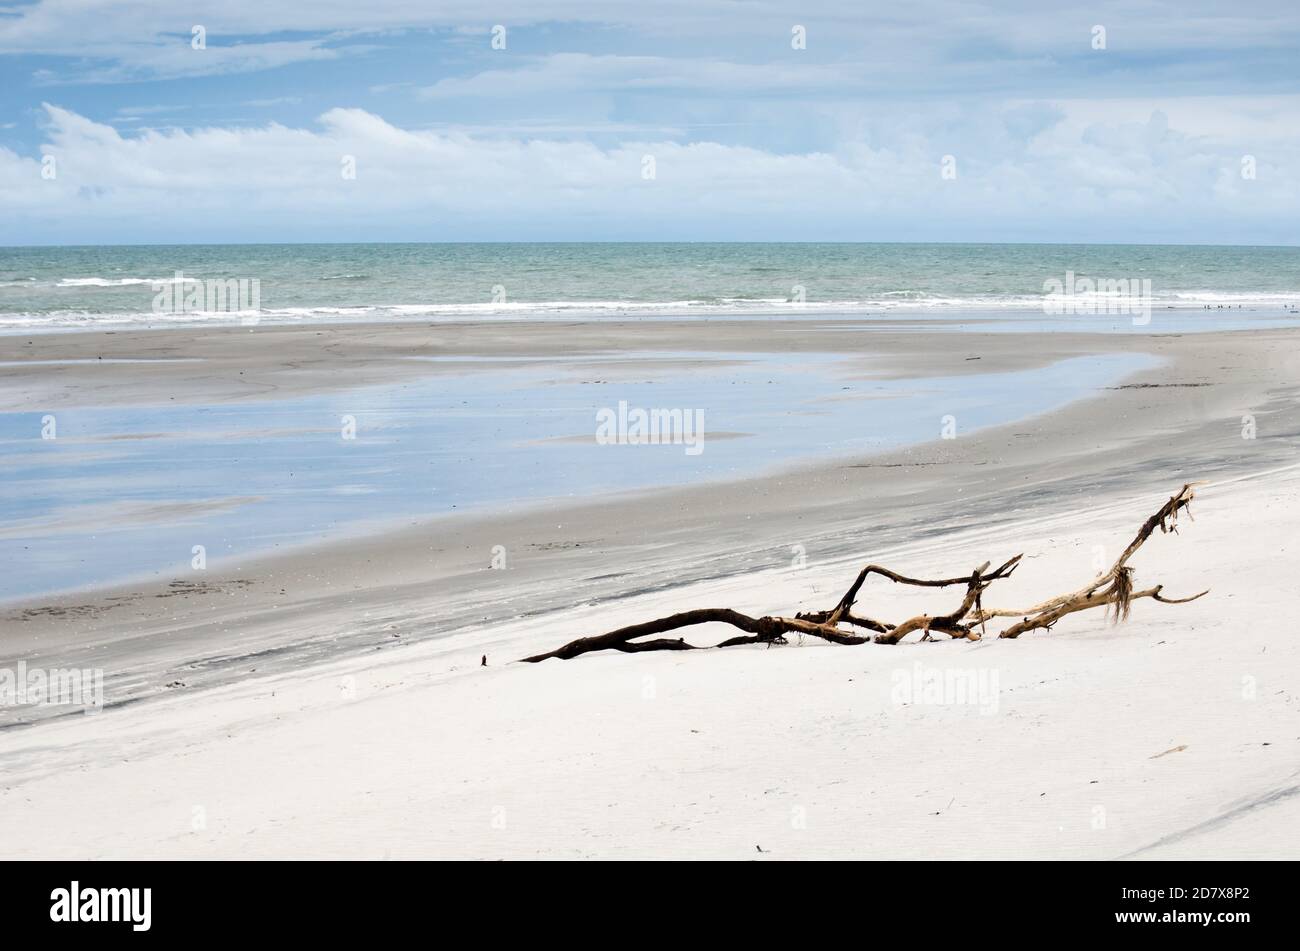 Punta Chame Beach situado en una península fina en el Golfo de Panamá Foto de stock